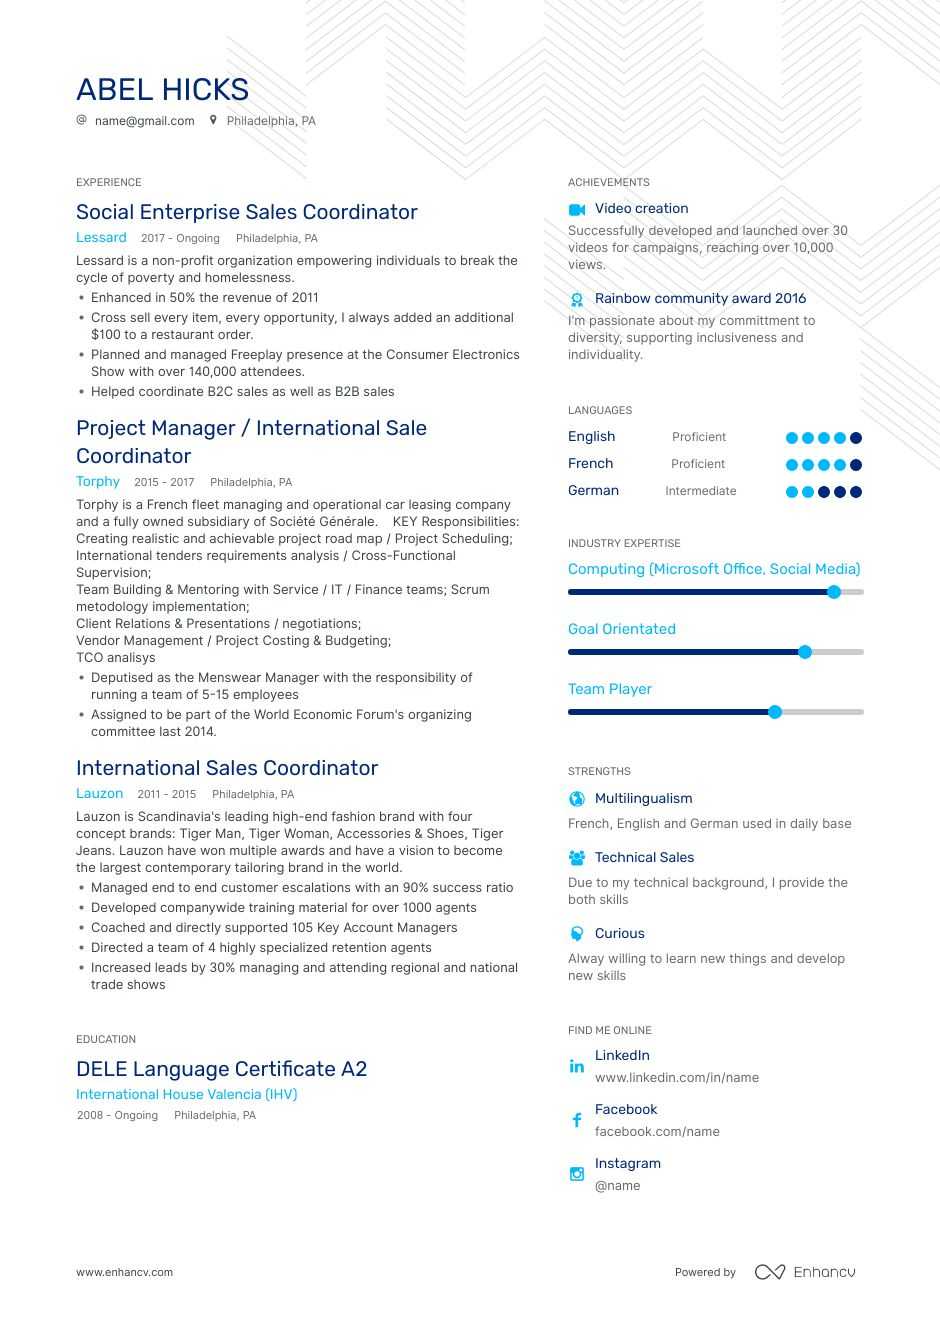 Resume format for sales coordinator jobs